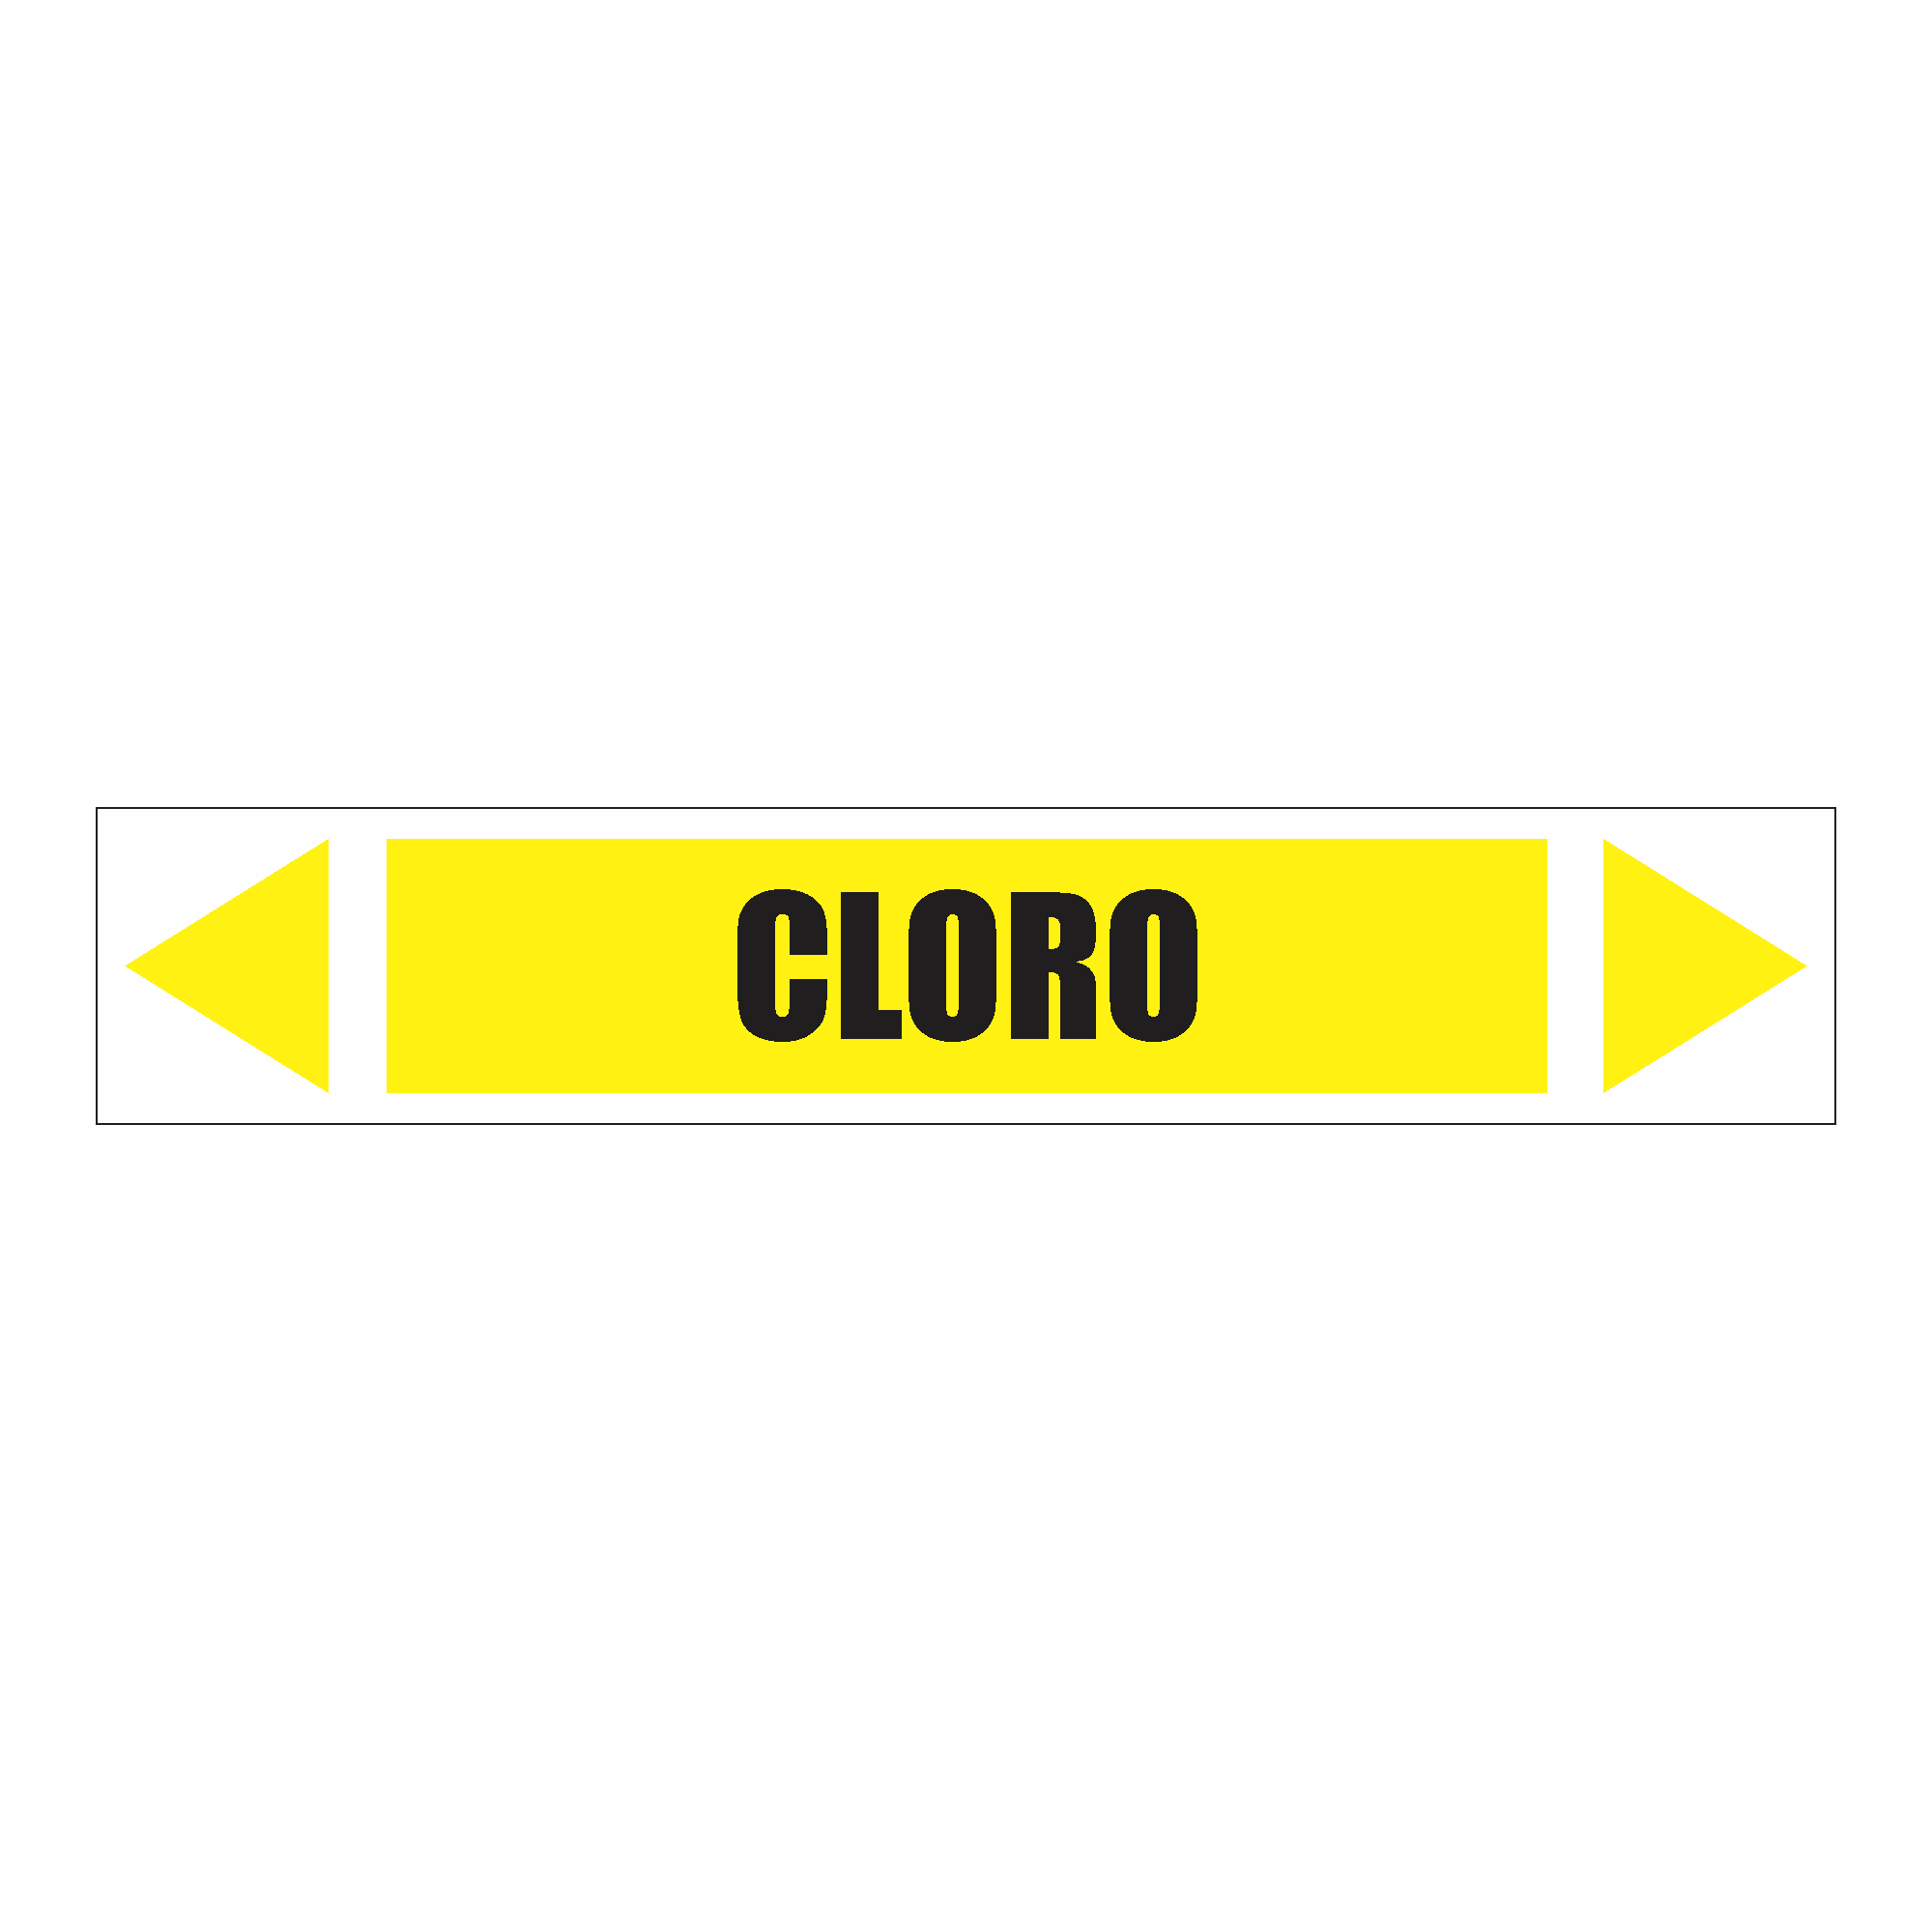 IDT 056 - Cloro